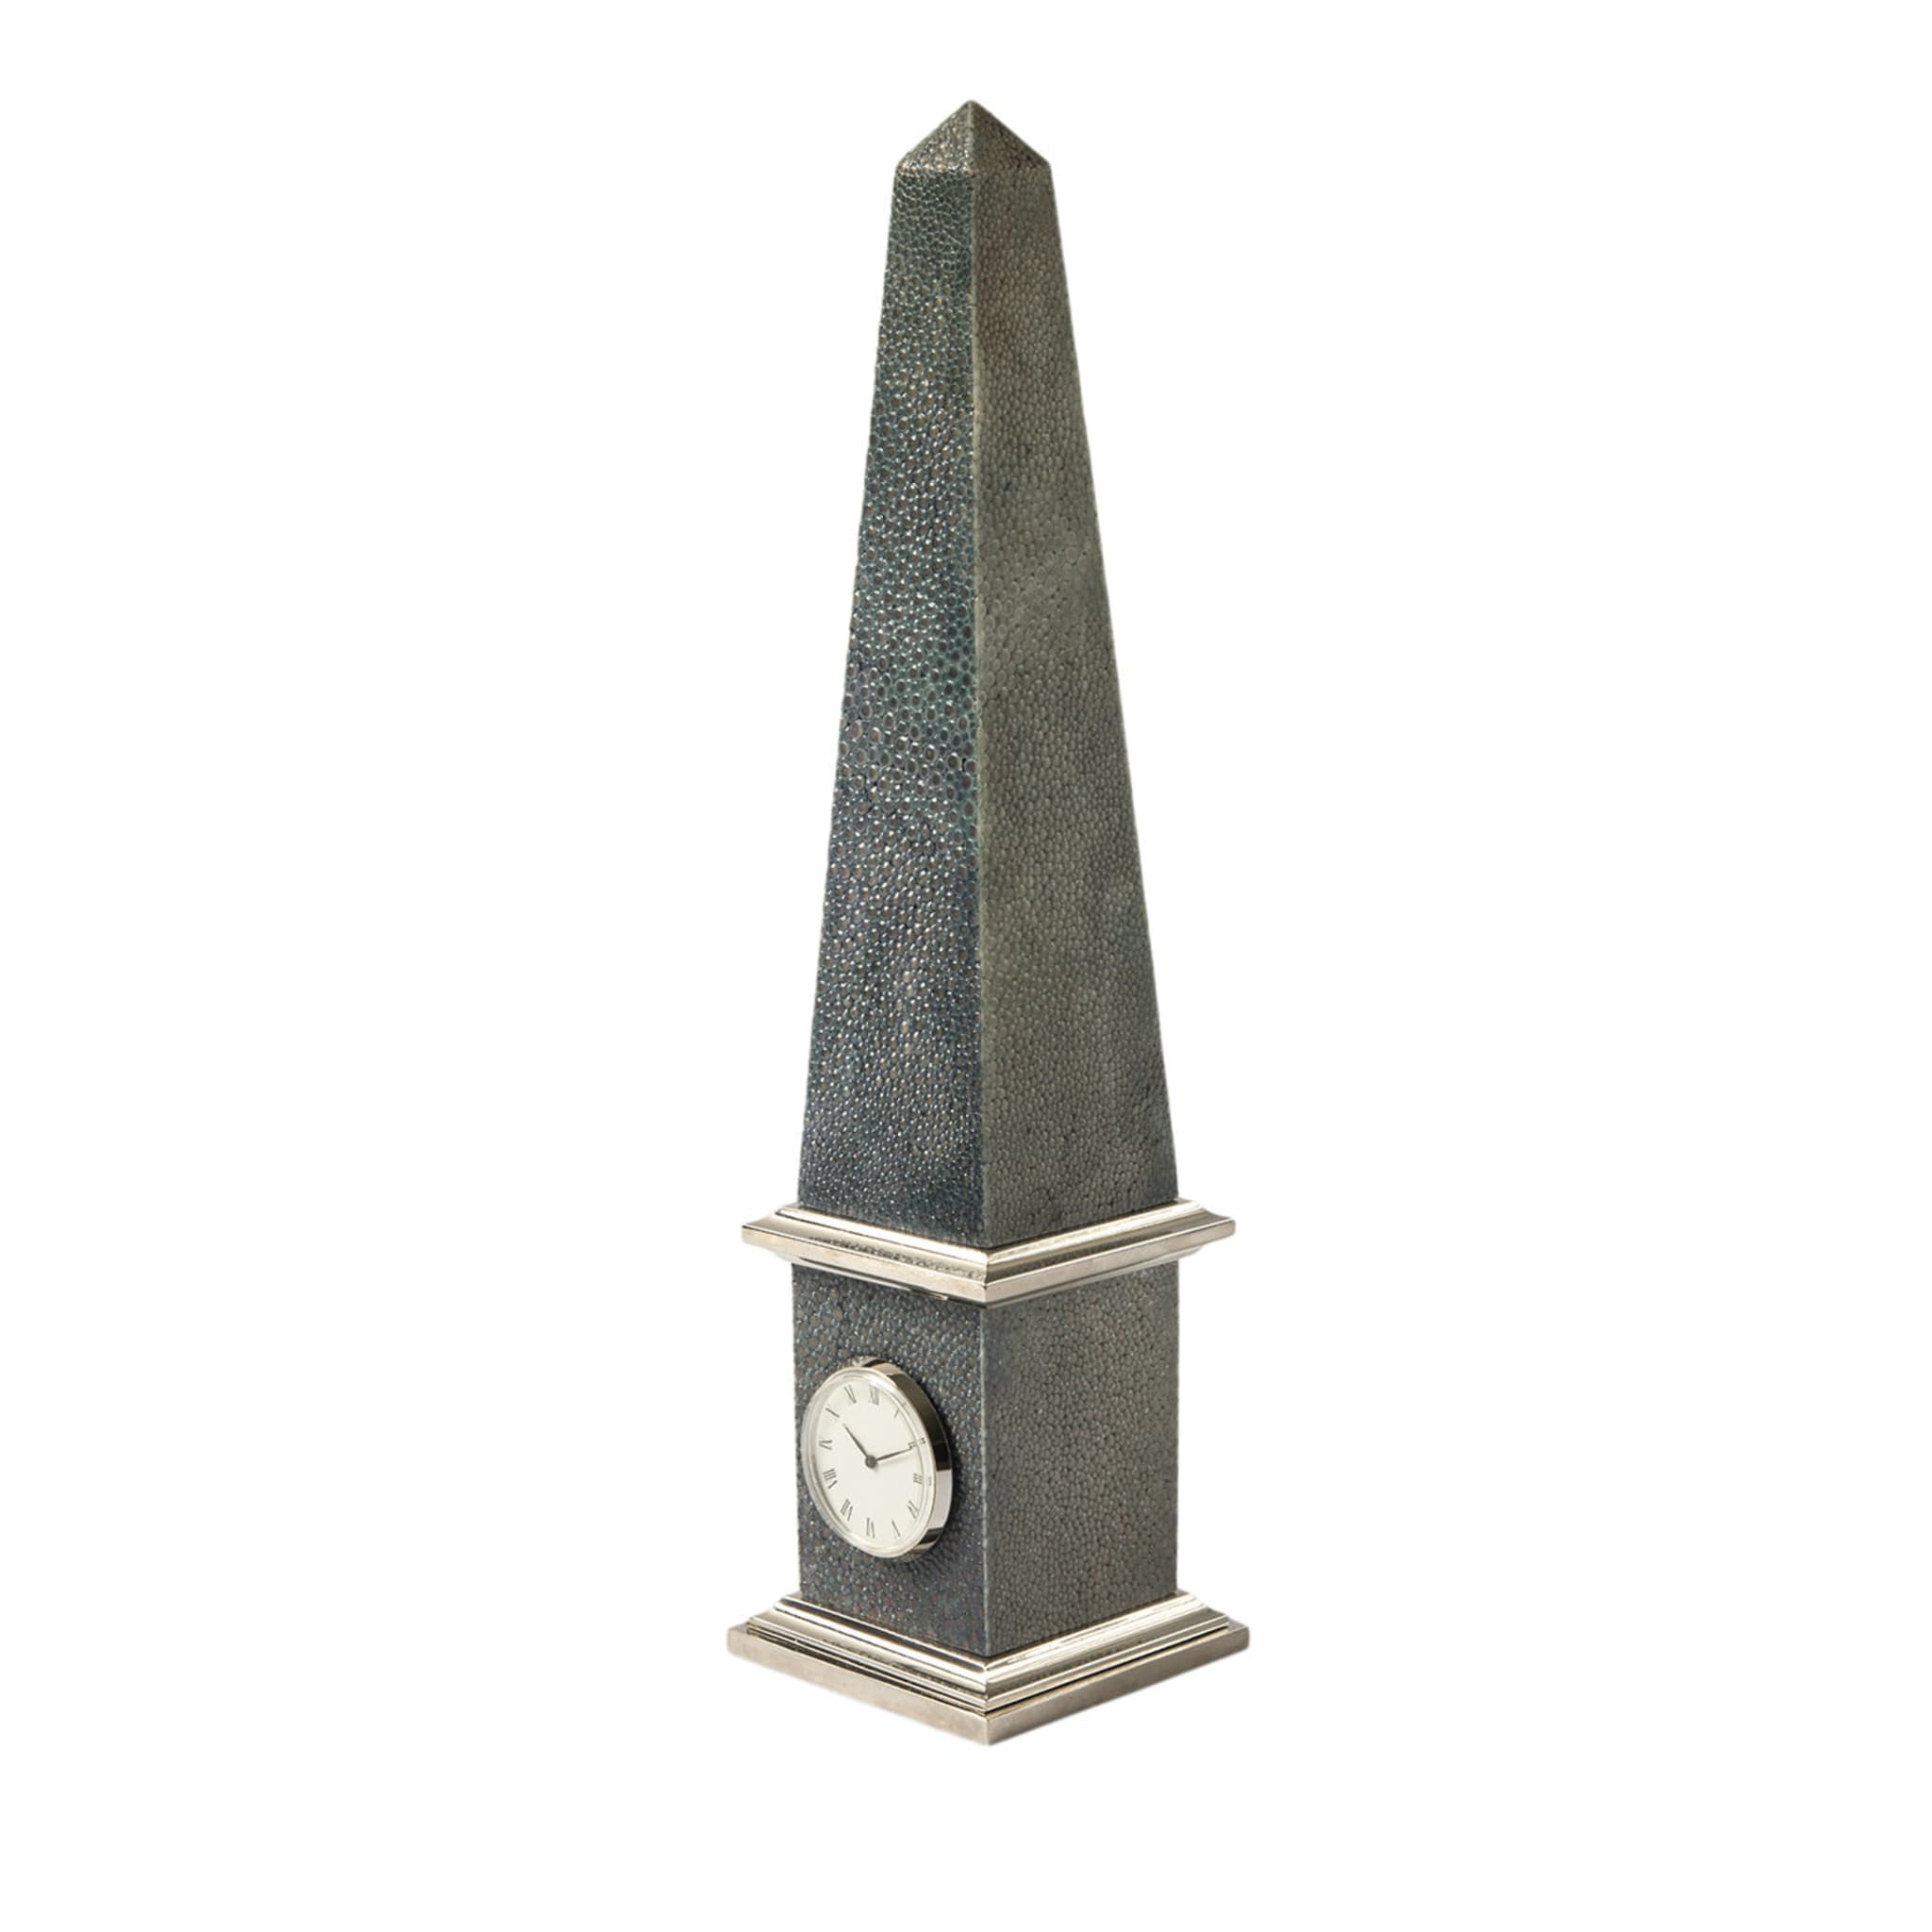 Galucharme Luxor Obelisk Uhr von Nino Basso - Hauptansicht